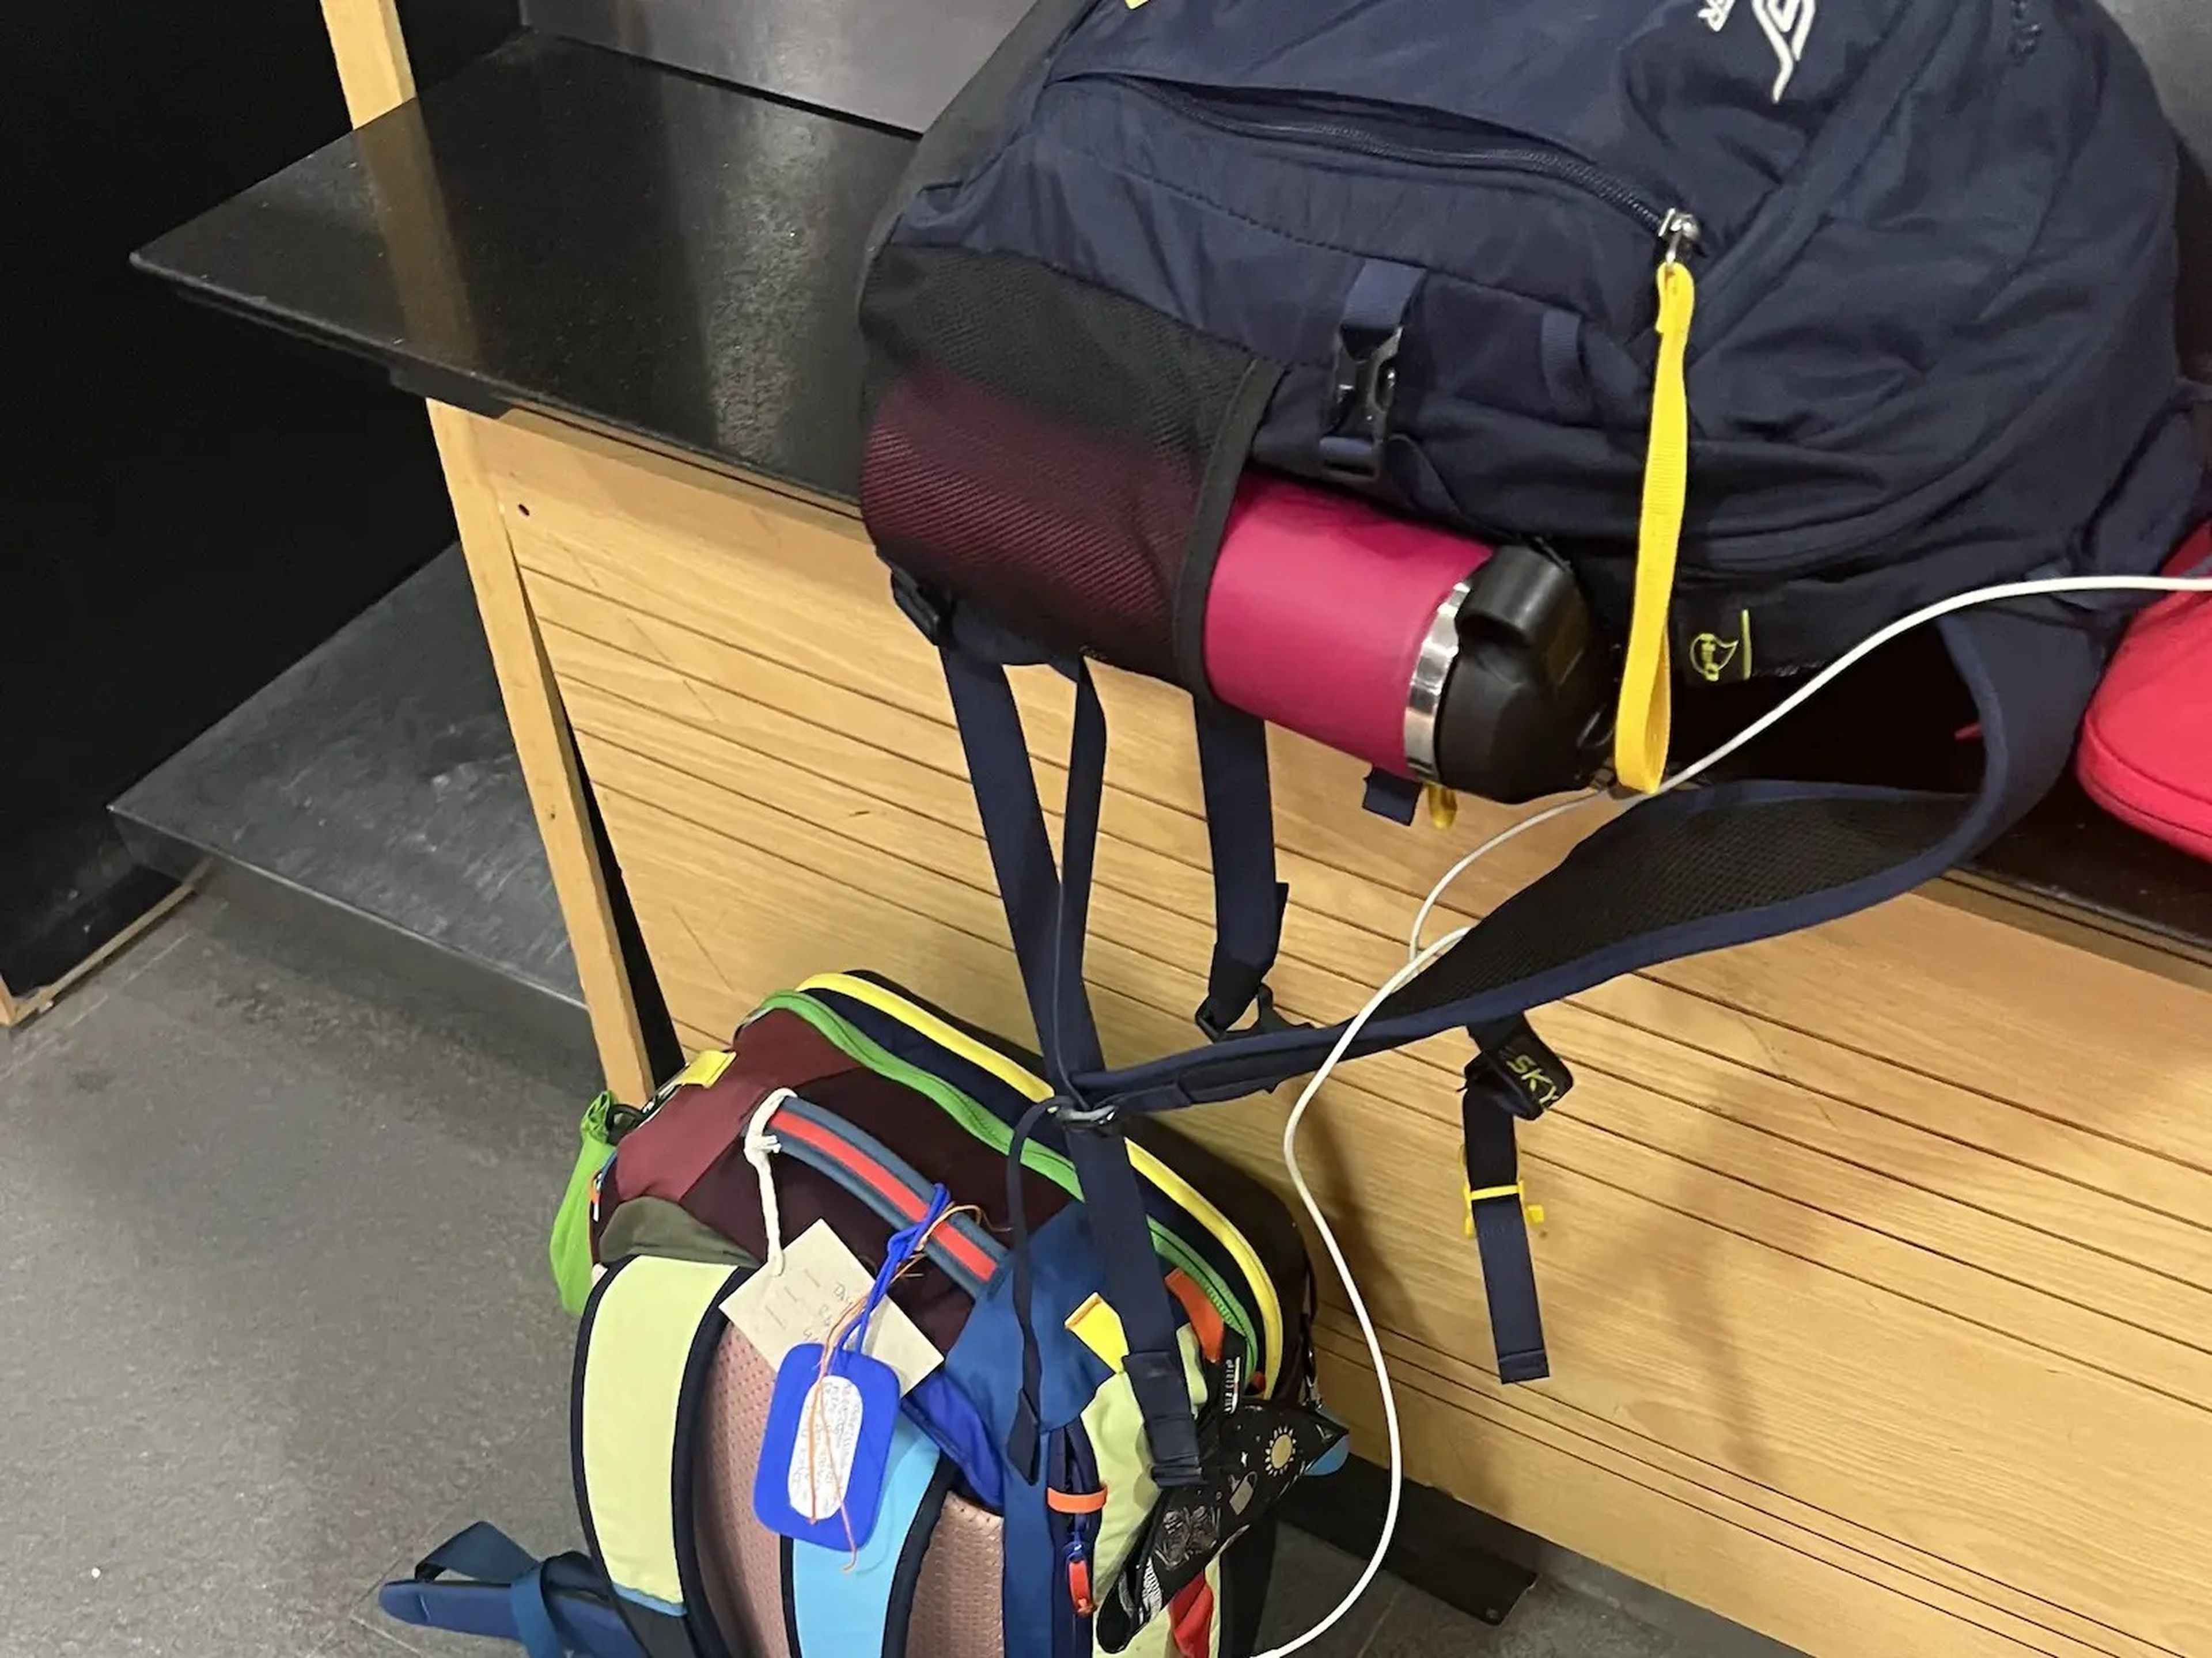 Mi mochila de mano Cotopaxi de 35L (abajo) y mi artículo personal de 20L (arriba). También sólo llevé un equipaje de mano debido a mi corta conexión en Buenos Aires de vuelta a casa.